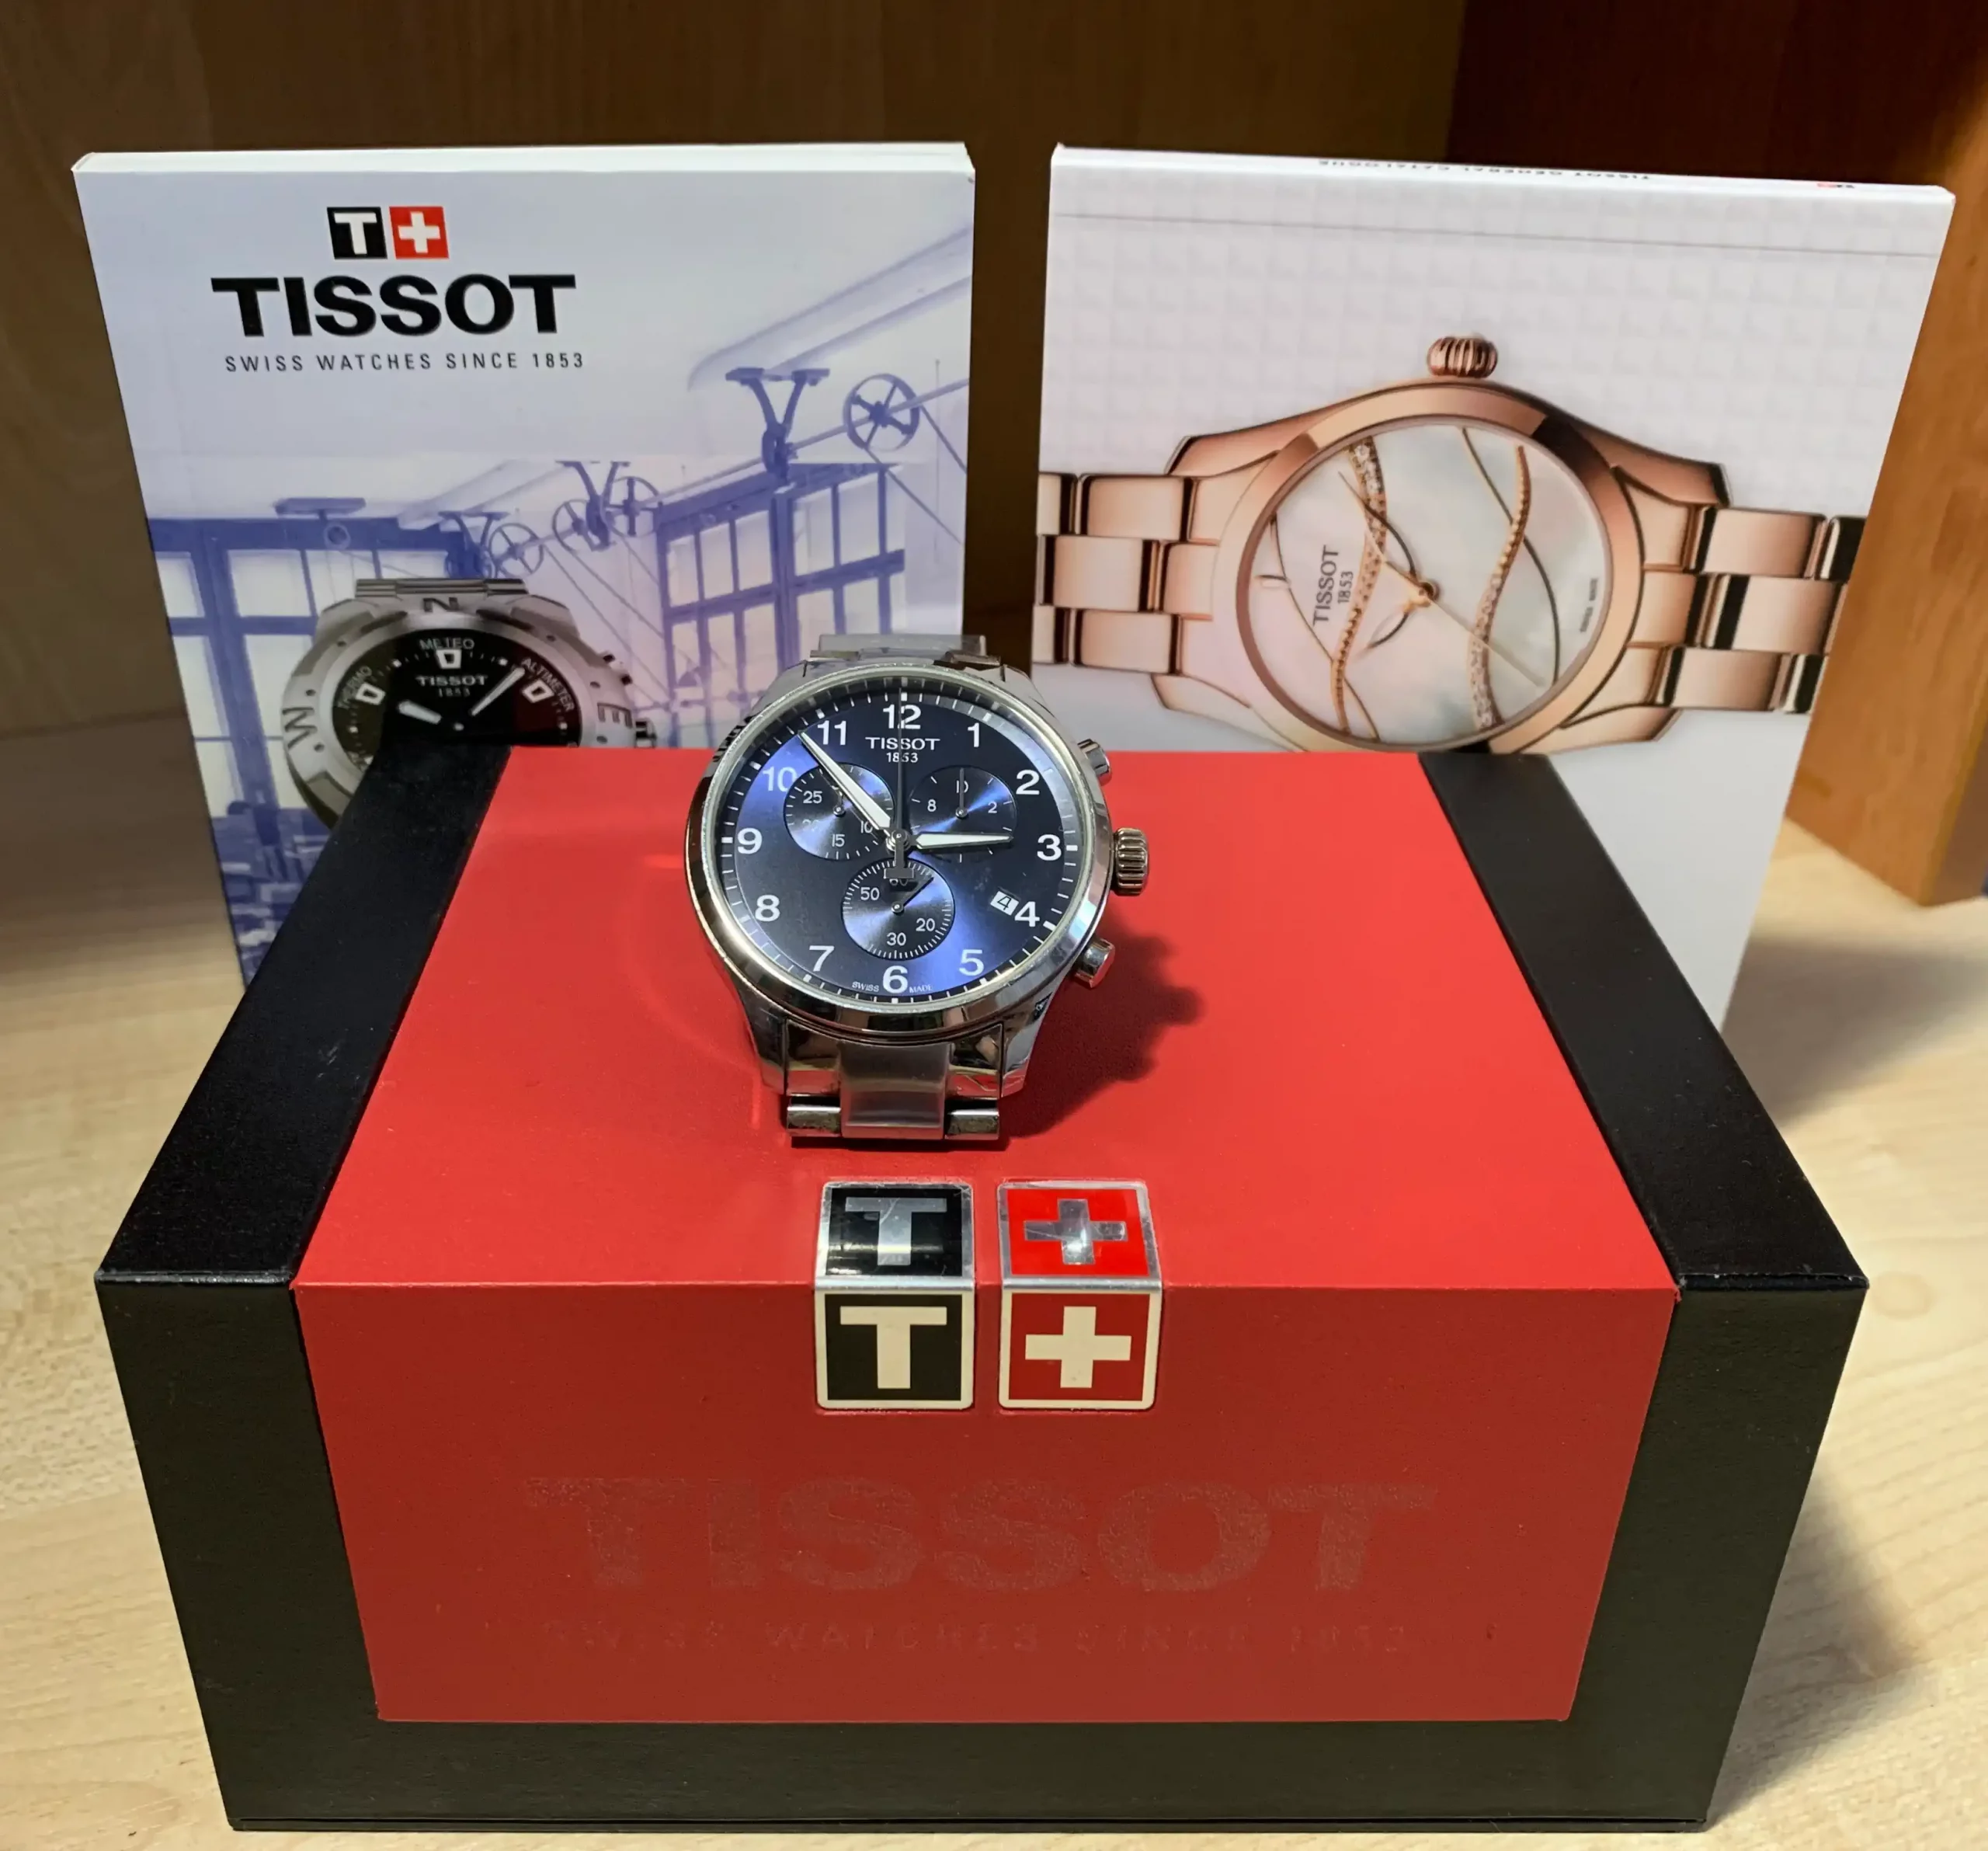 Подарочная коробка, а также книга про историю компании Tissot, и каталог.